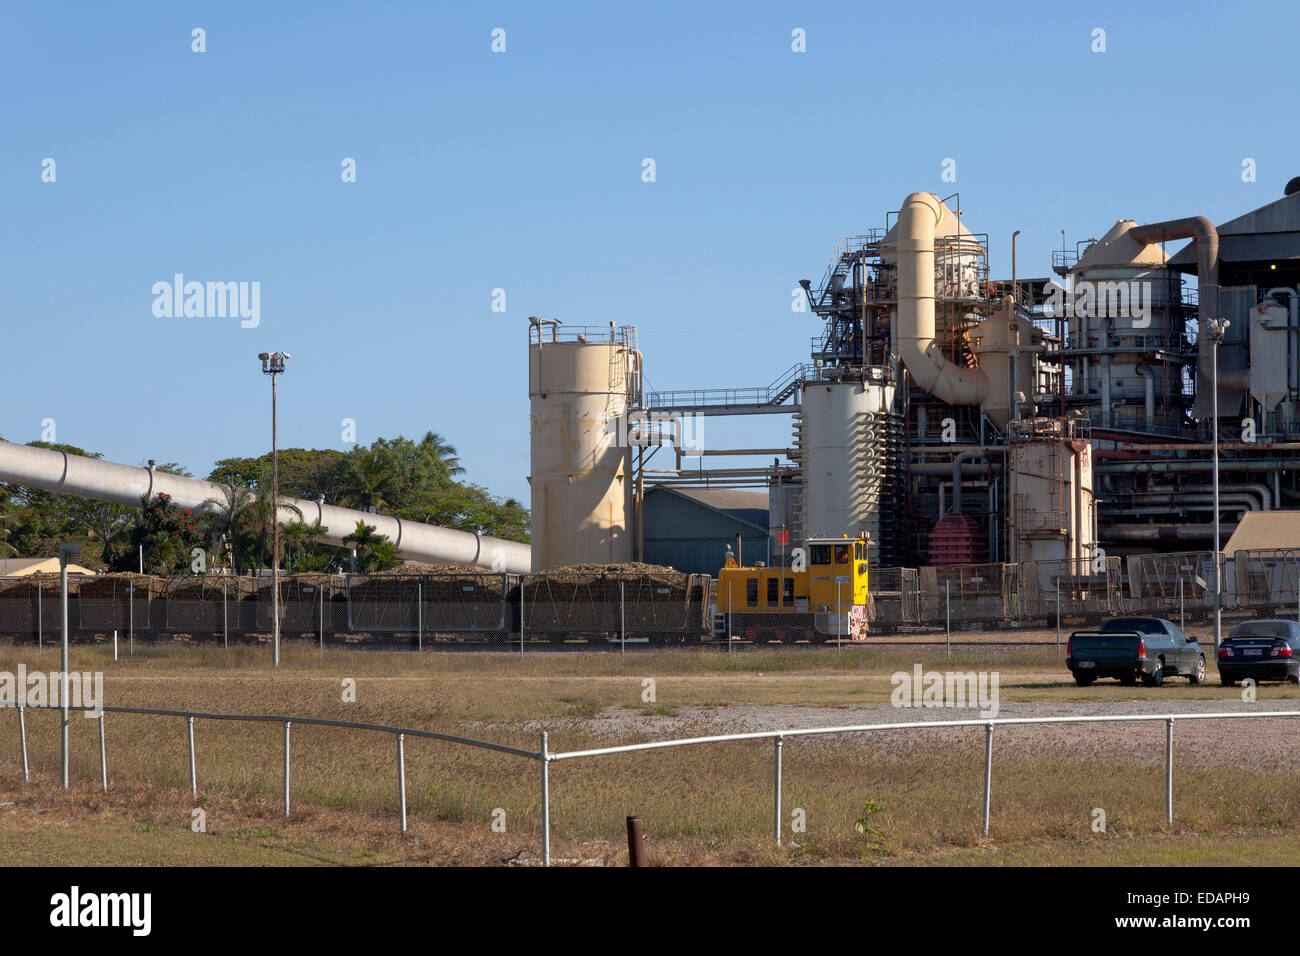 L'usine de canne à sucre près de Ingham dans le Queensland, Australie Banque D'Images